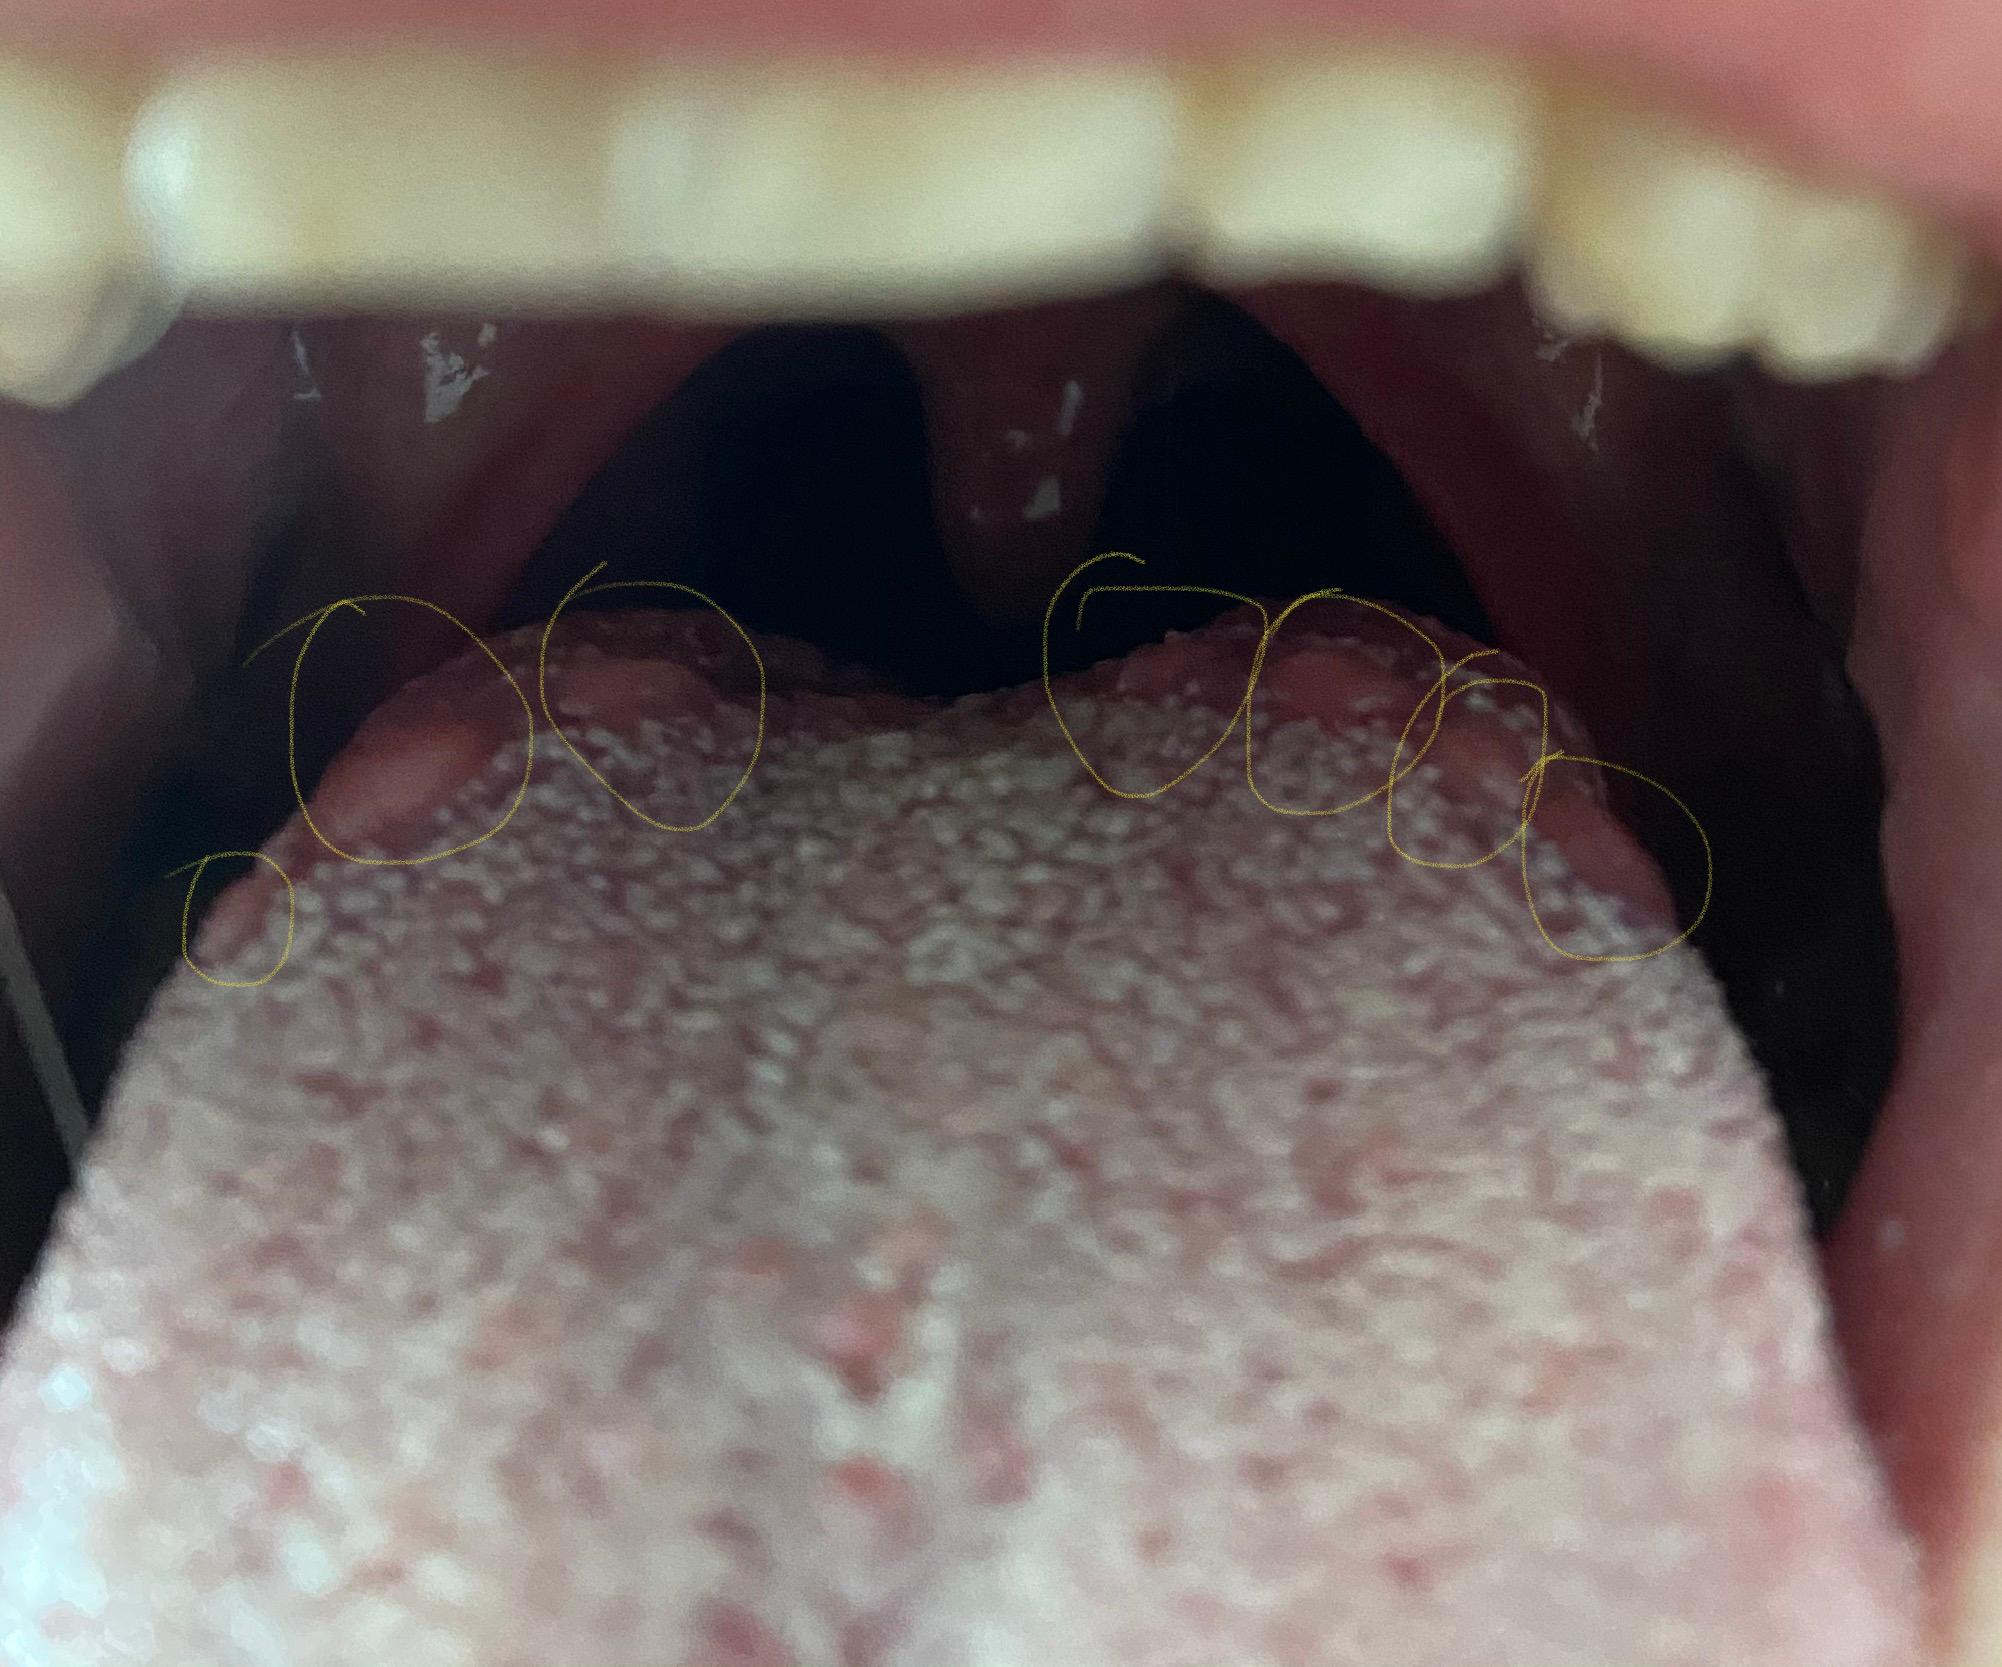 Erhöhungen/Beulen auf Zunge? Pilz? (Gesundheit und Medizin, Gesundheit